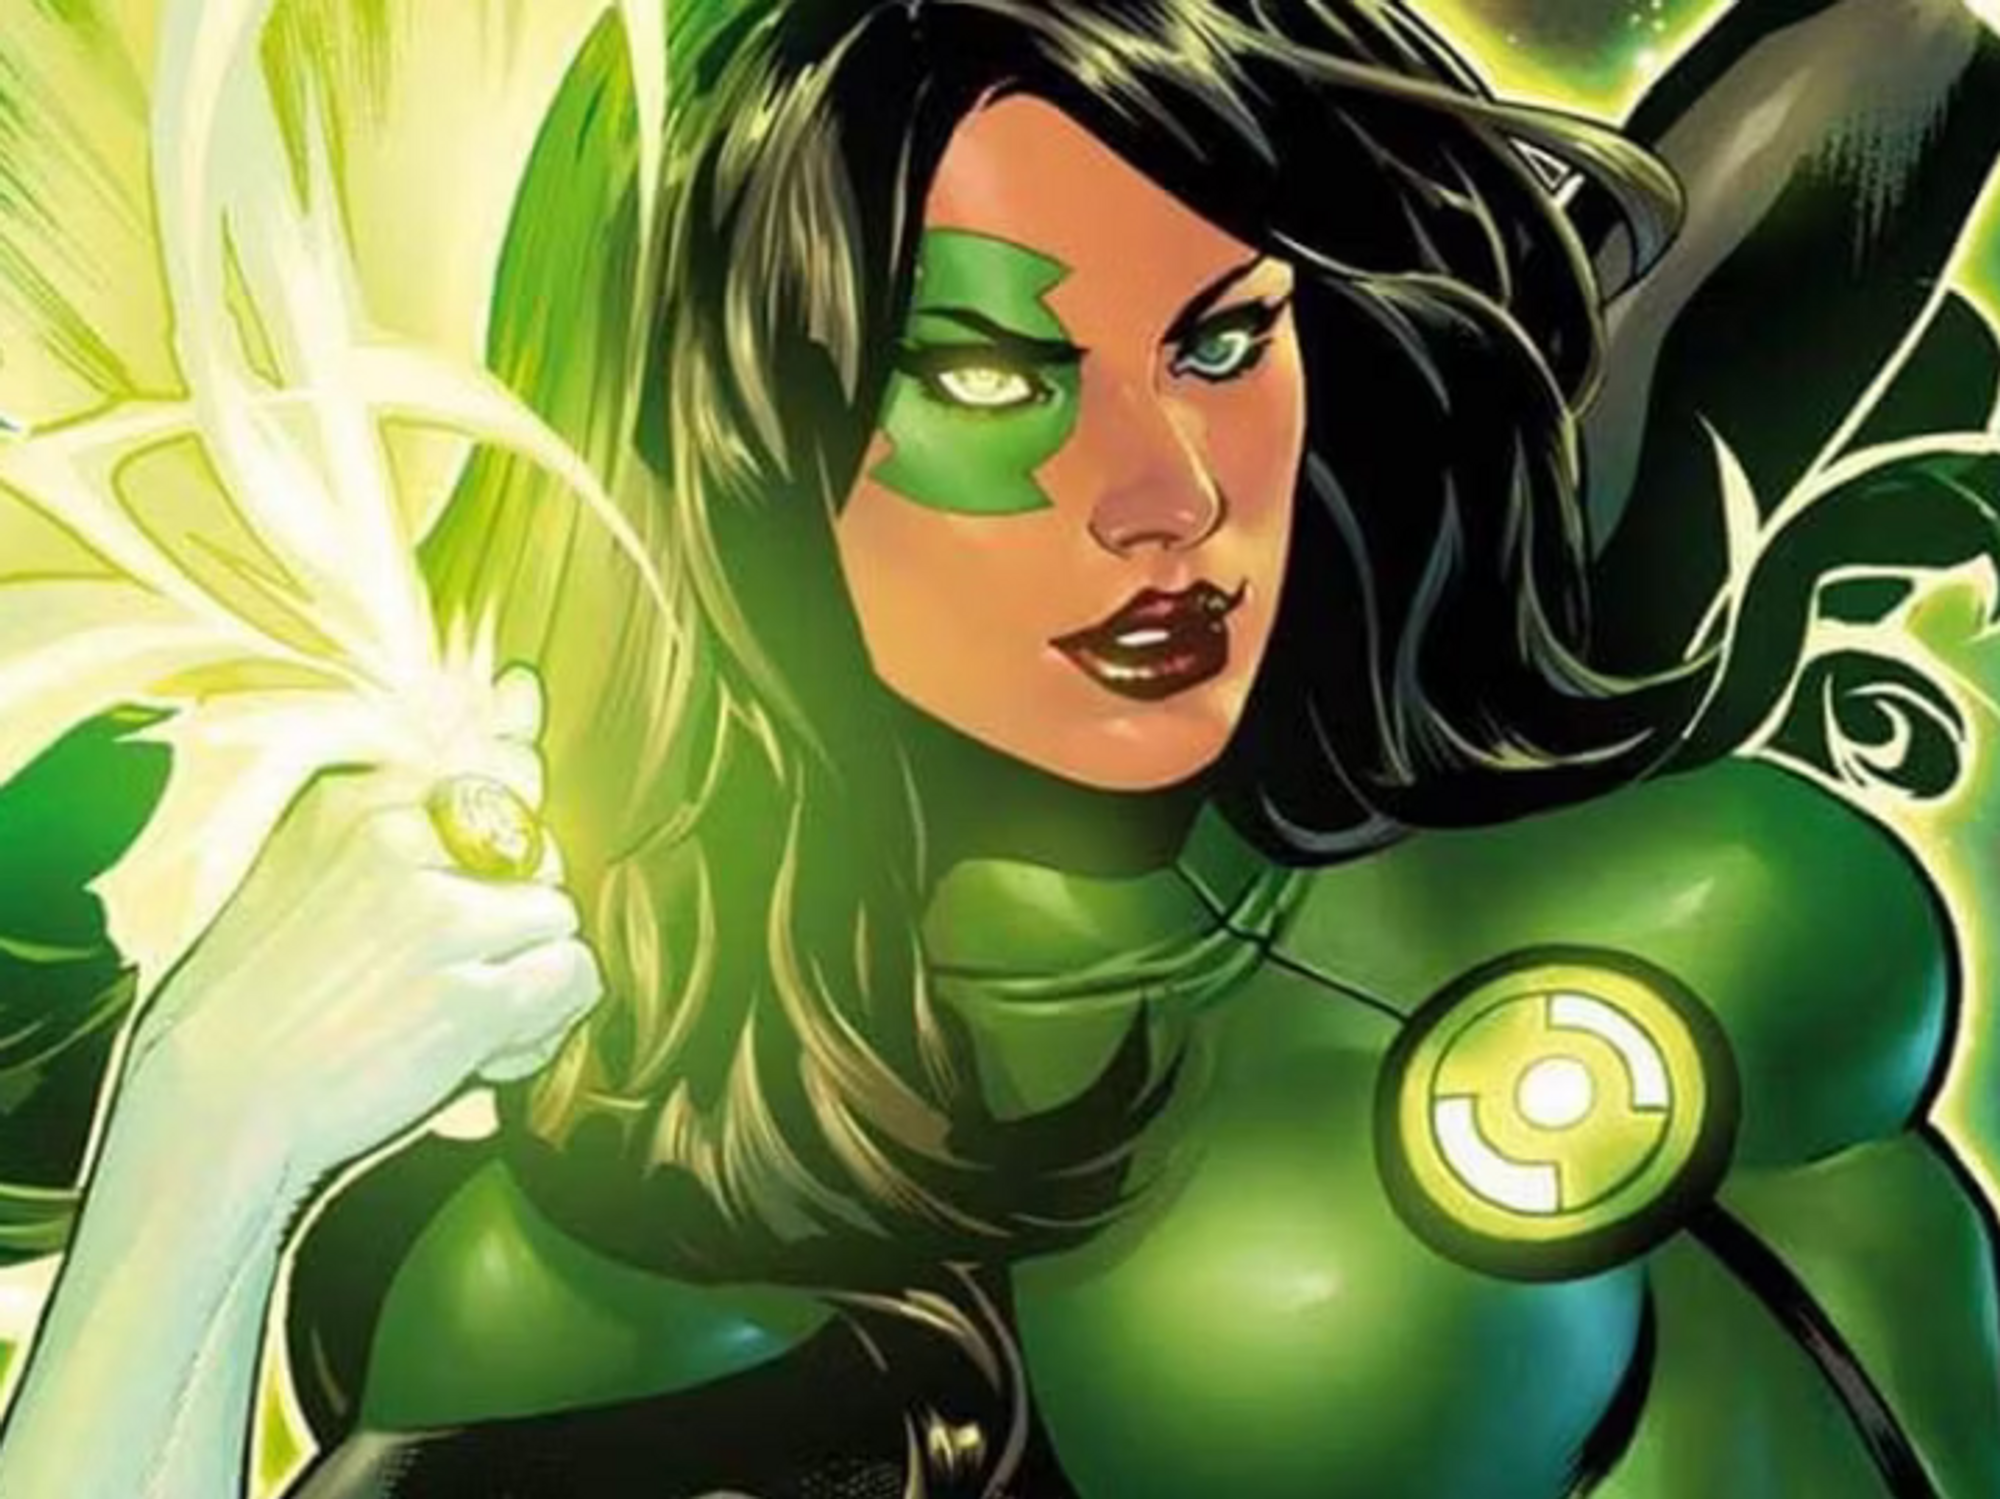 Artwork for the character Jessica Cruz aka Green Lantern